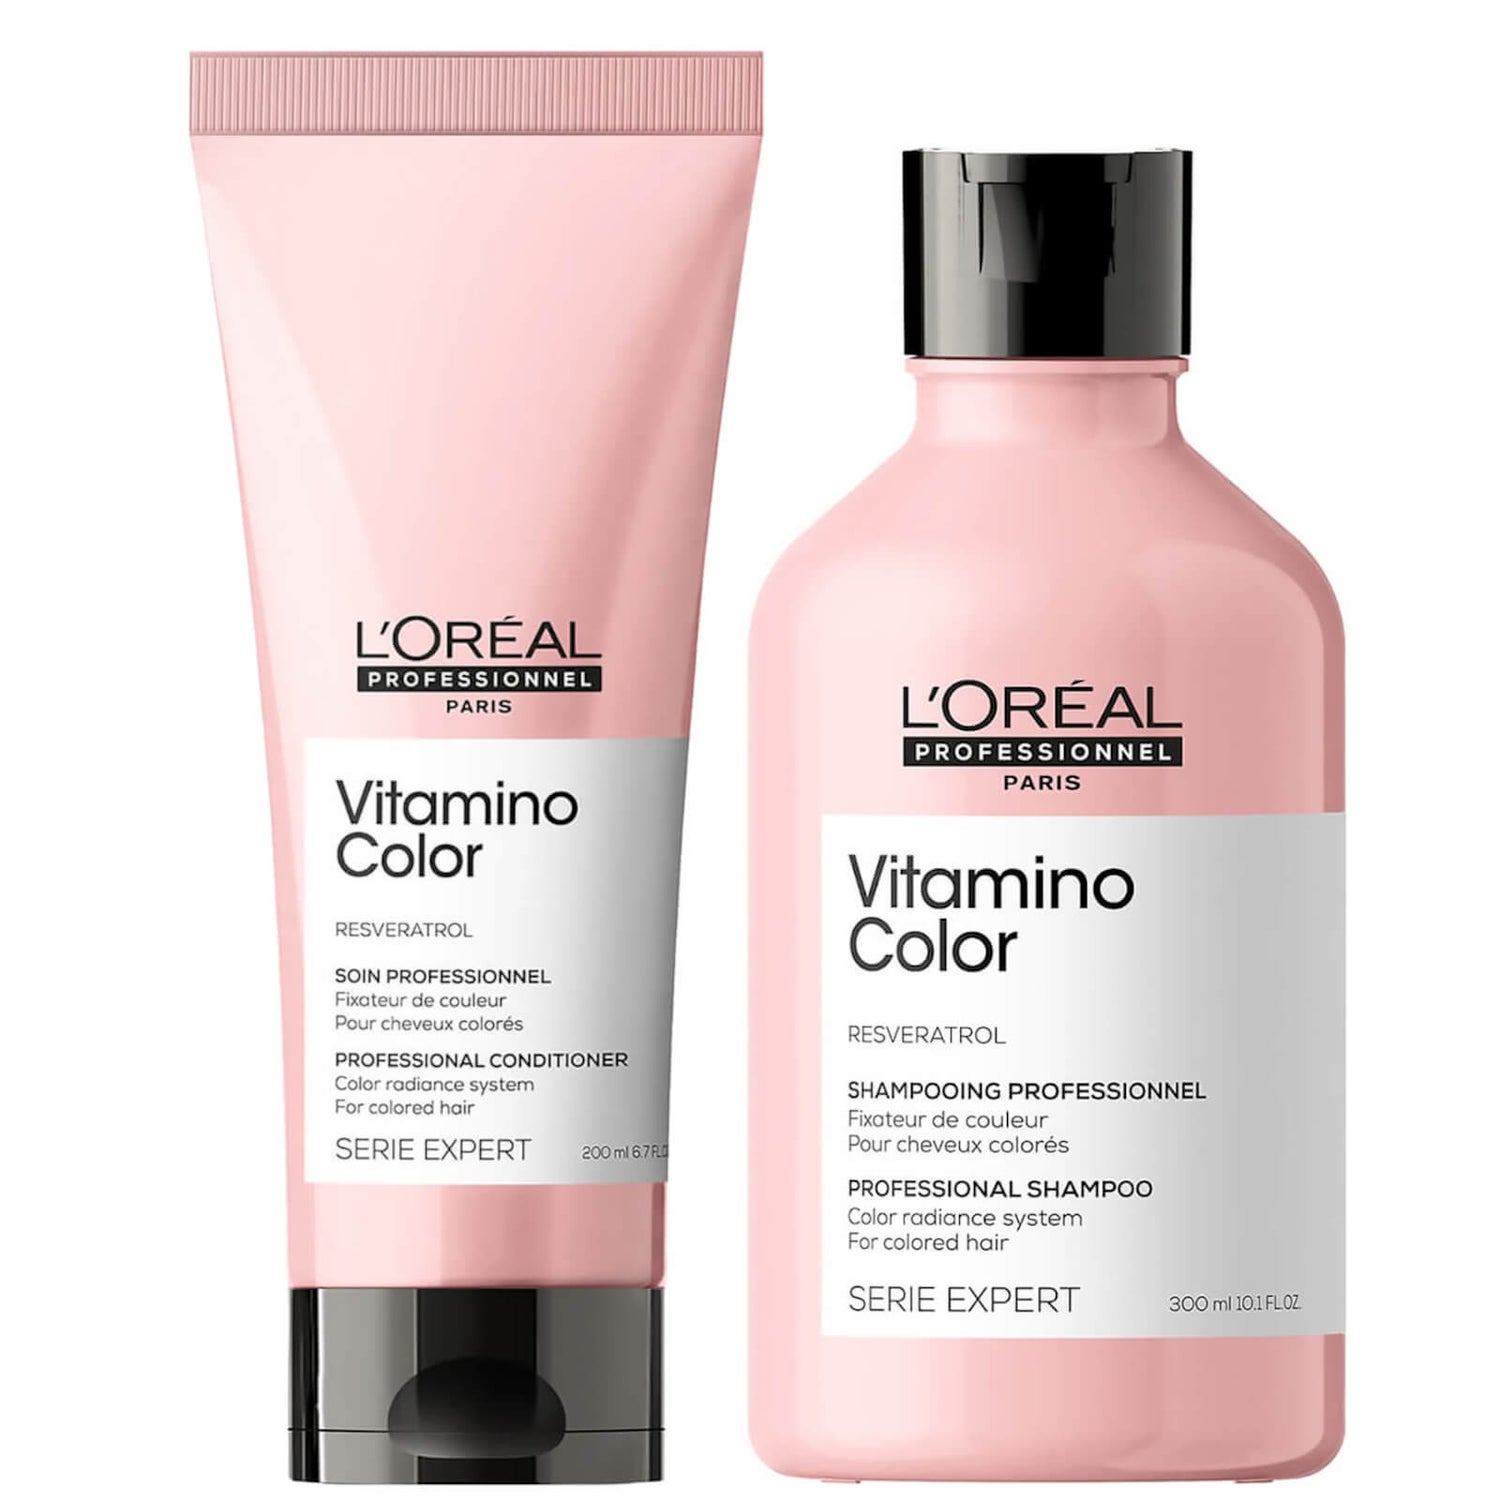 Professionnel Serie Vitamino Shampoo and Conditioner Duo - LOOKFANTASTIC